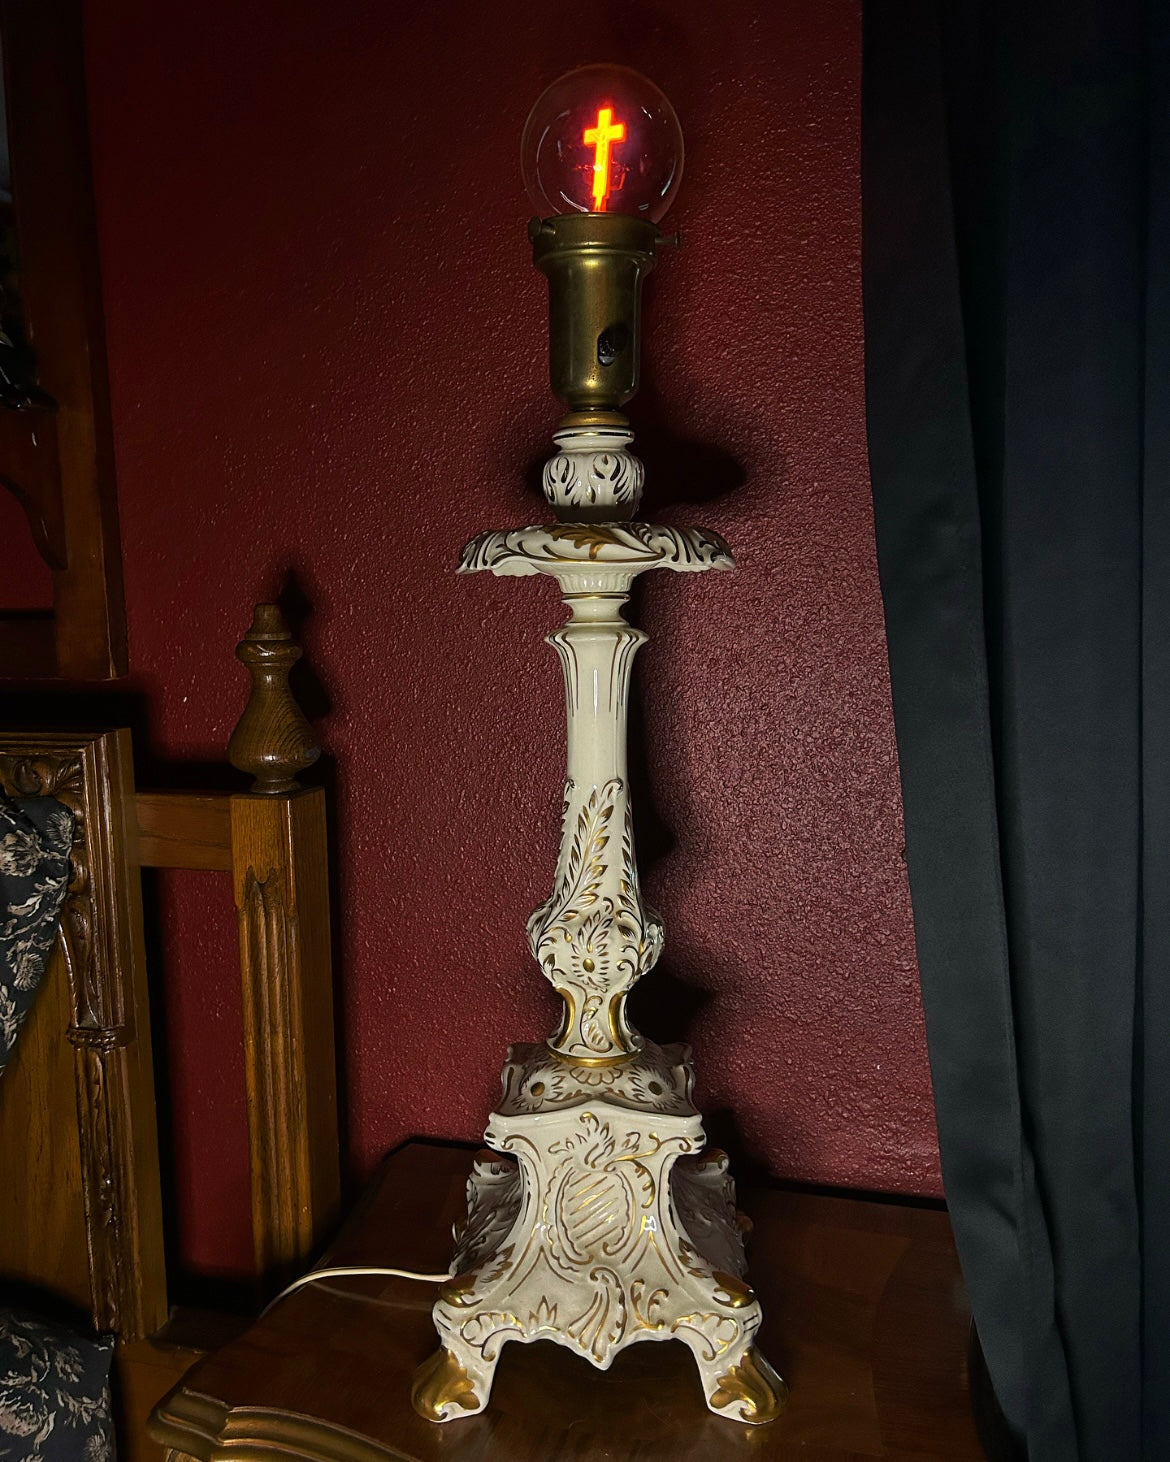 Tall Ornate White & Gold Lamp with Cross Lightbulb